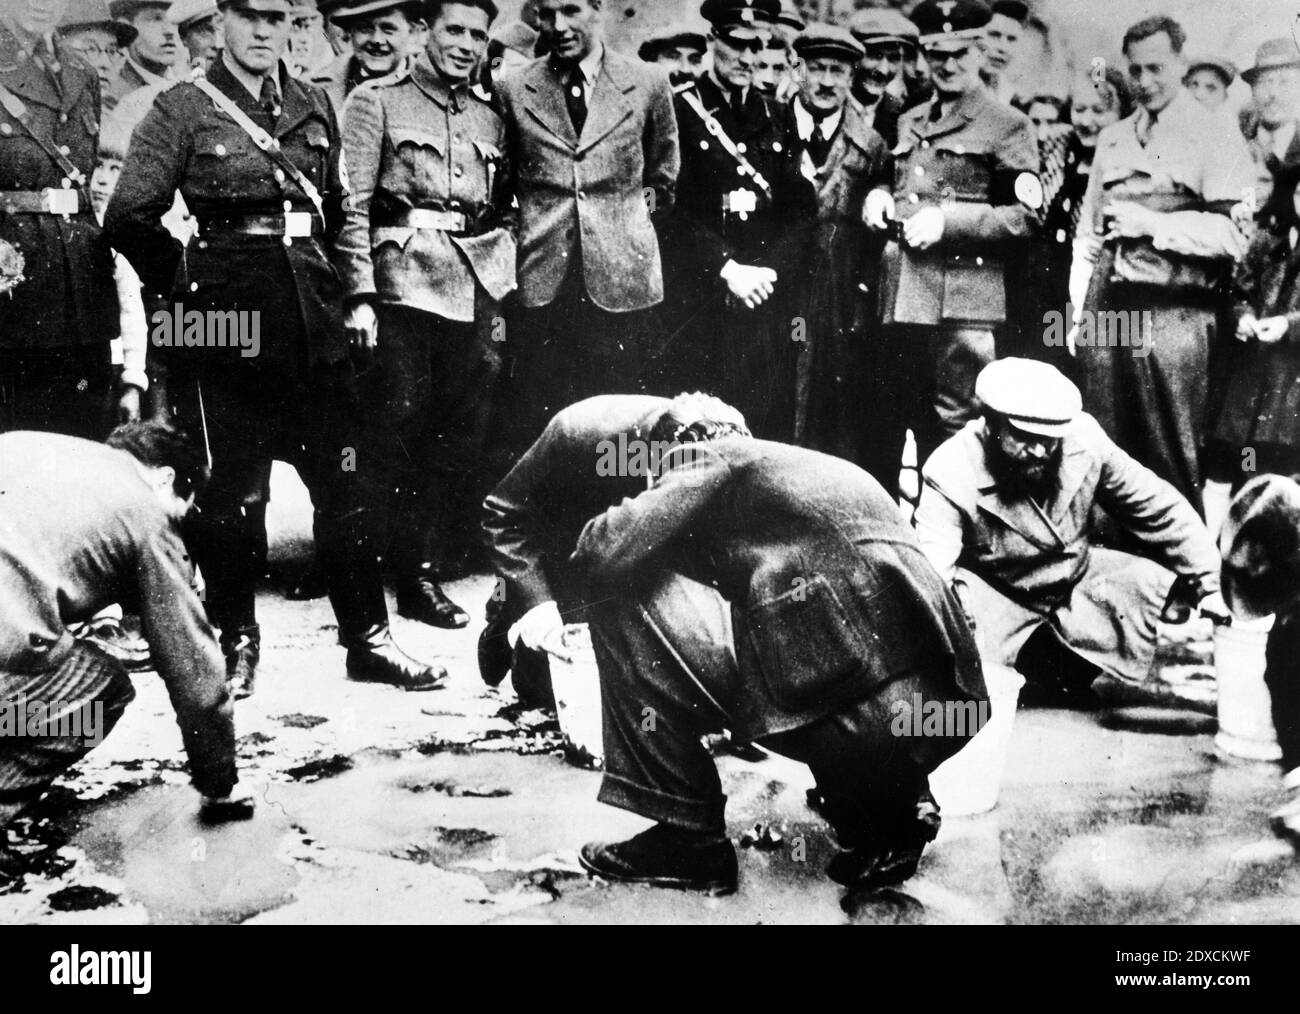 Les Nazis autrichiens et les résidents locaux regardent comme les Juifs sont forcés de se mettre sur les mains et les genoux et de frotter le pavé. Date : du 1938 mars au 1938 avril Lieu: Vienne, Autriche Banque D'Images